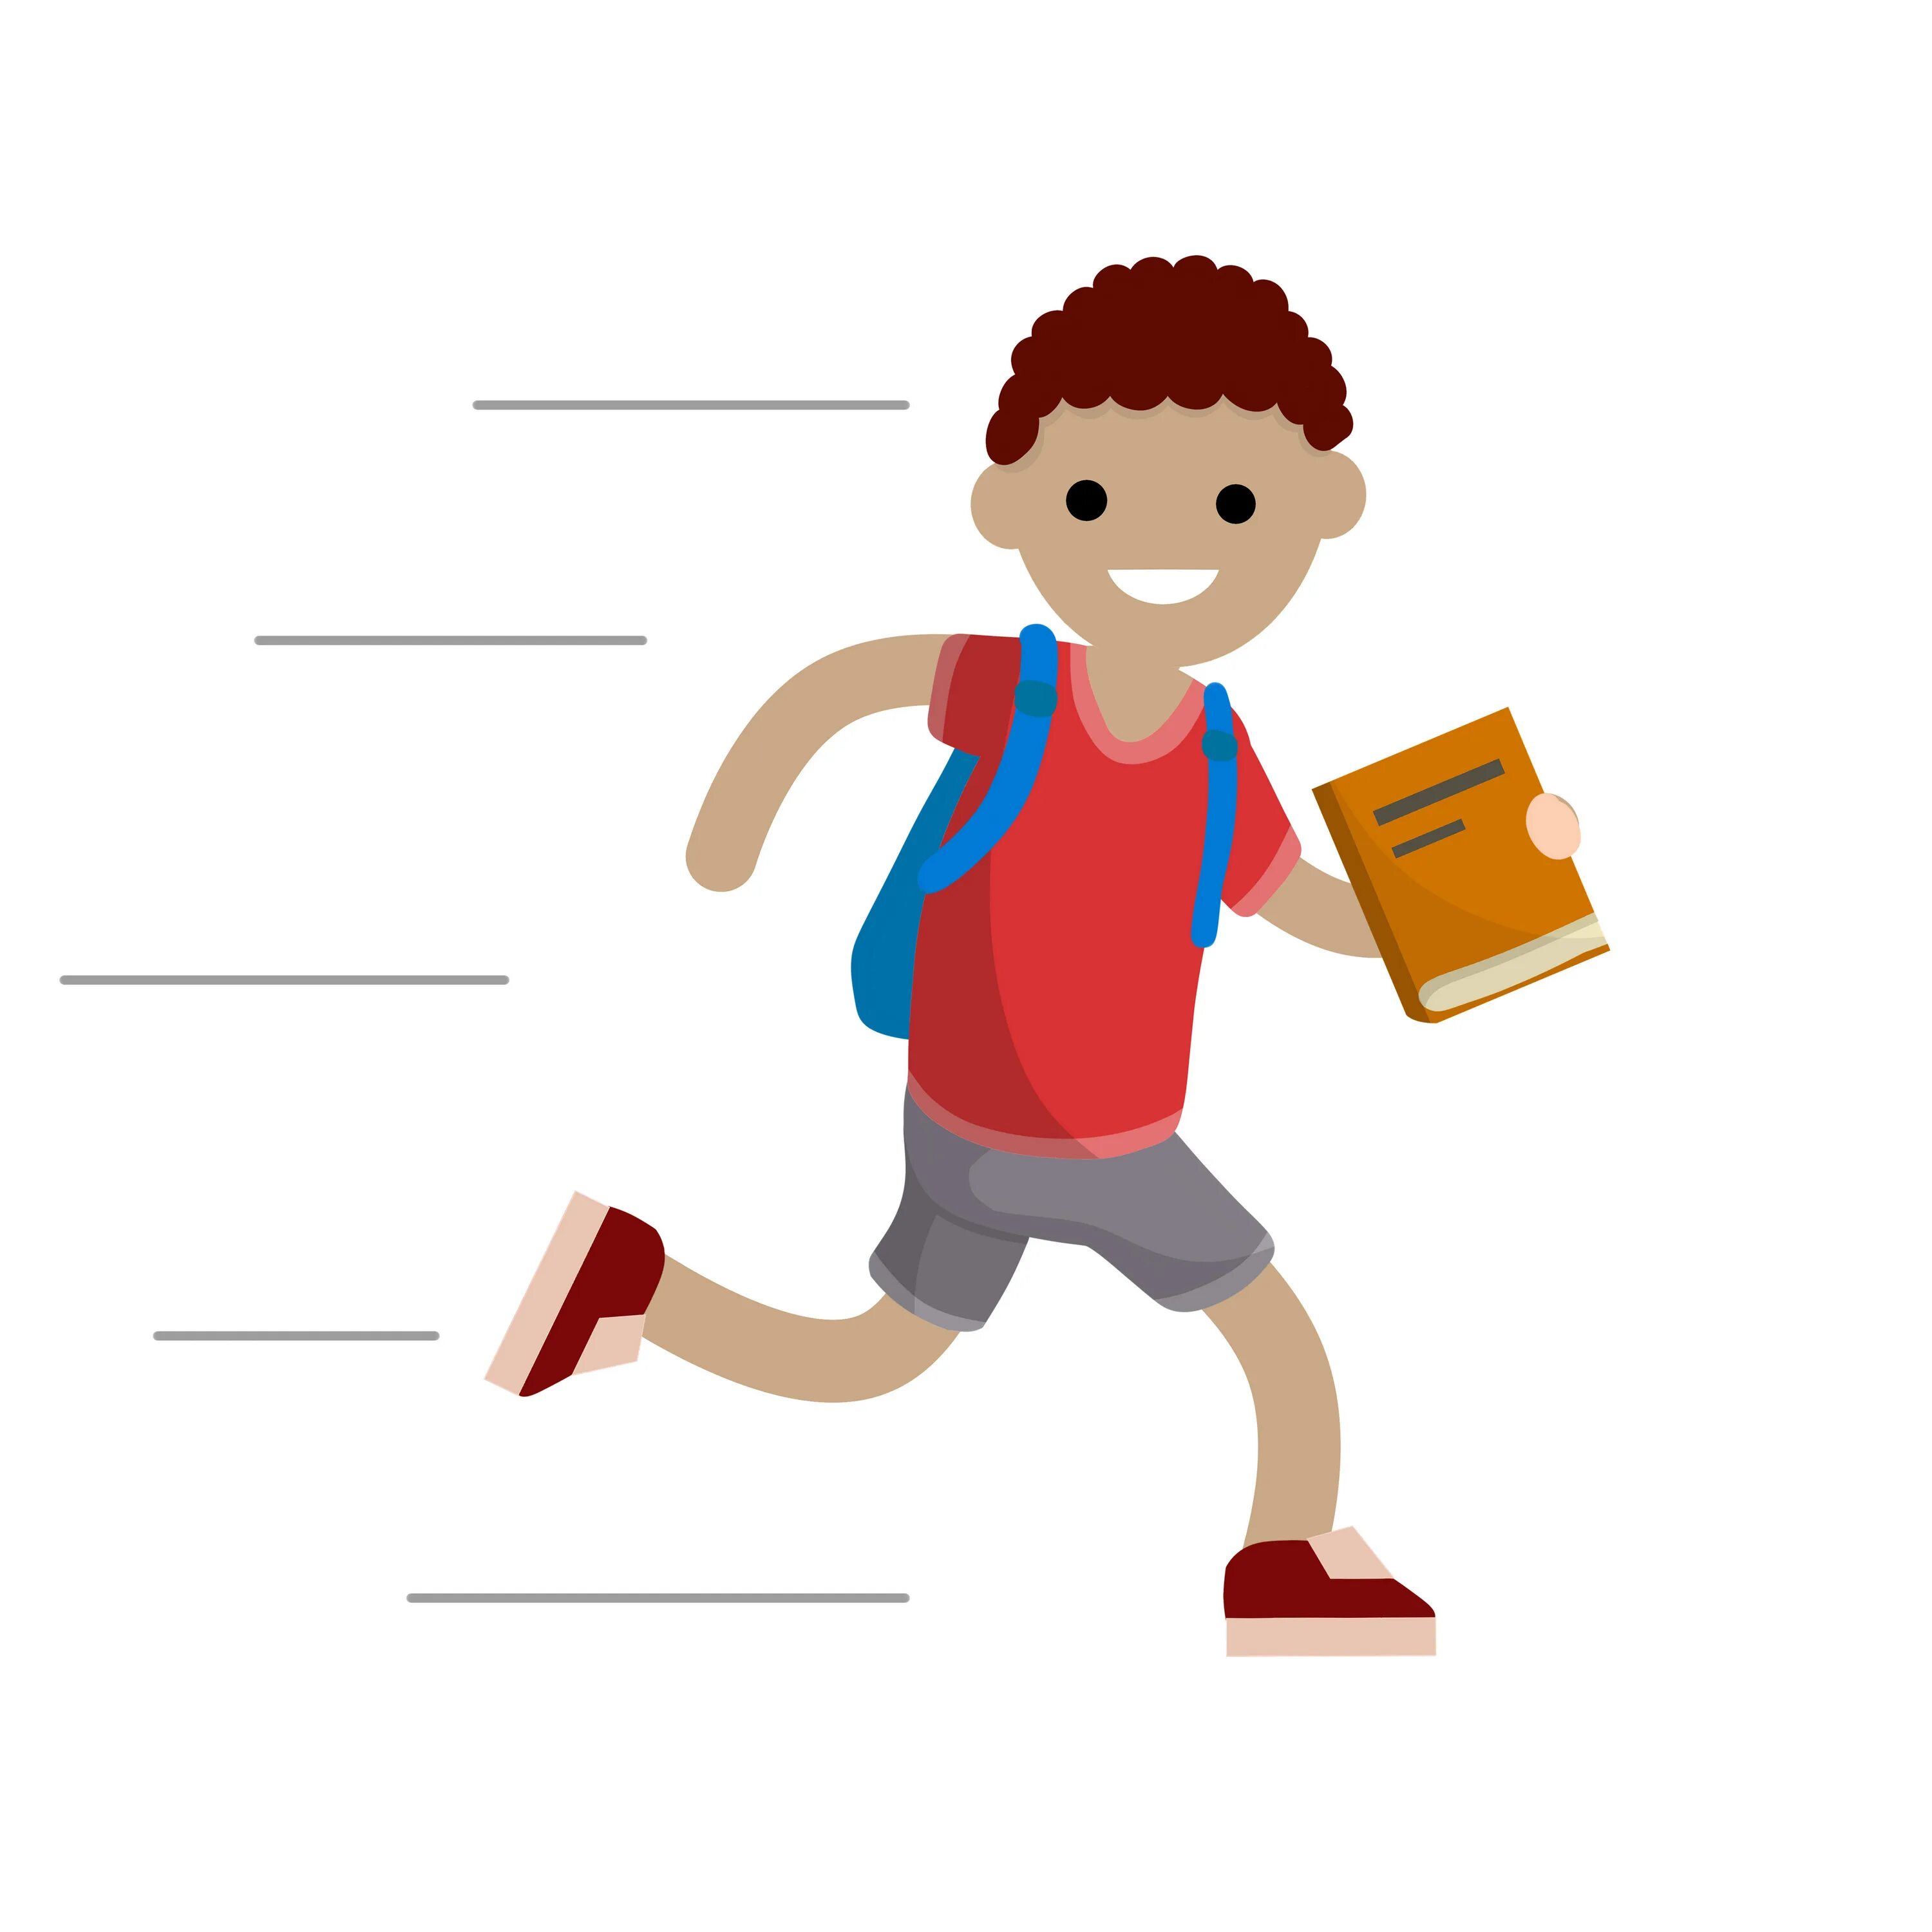 Late for school. Плоская иллюстрация плакат студент с рюкзаком. Мальчик и контрольная иллюстр.